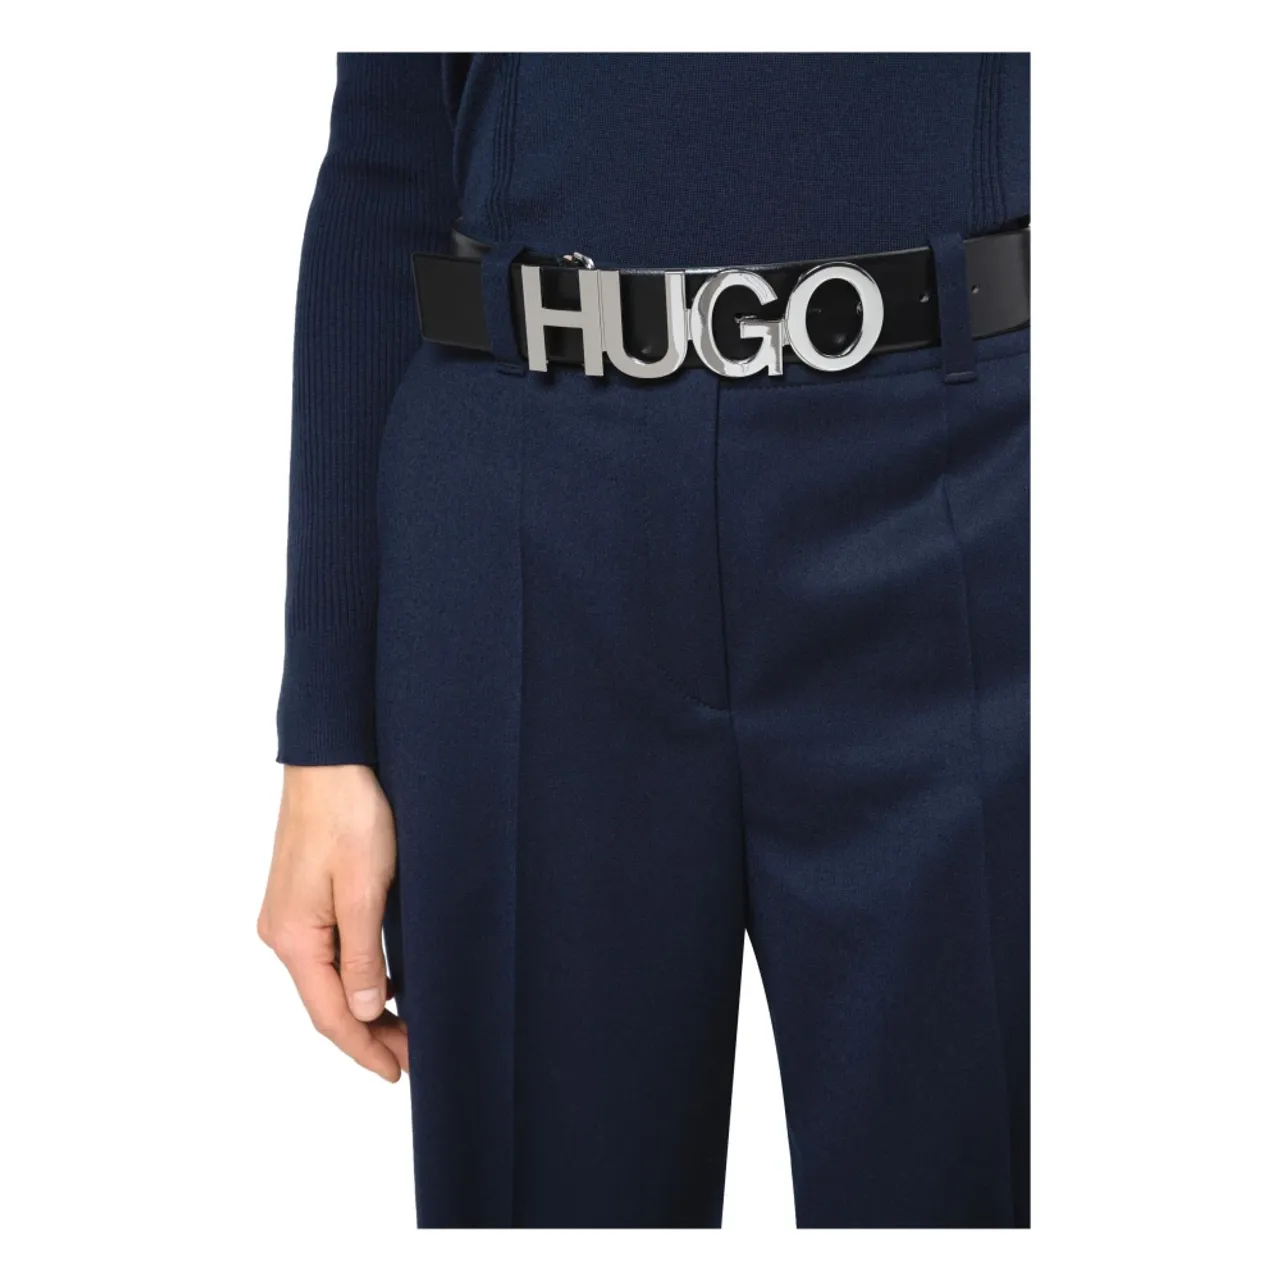 Hugo Boss , Belt in pelle logo fibbia Zula Belt 4 cm 50391327 ,Black female, Sizes: